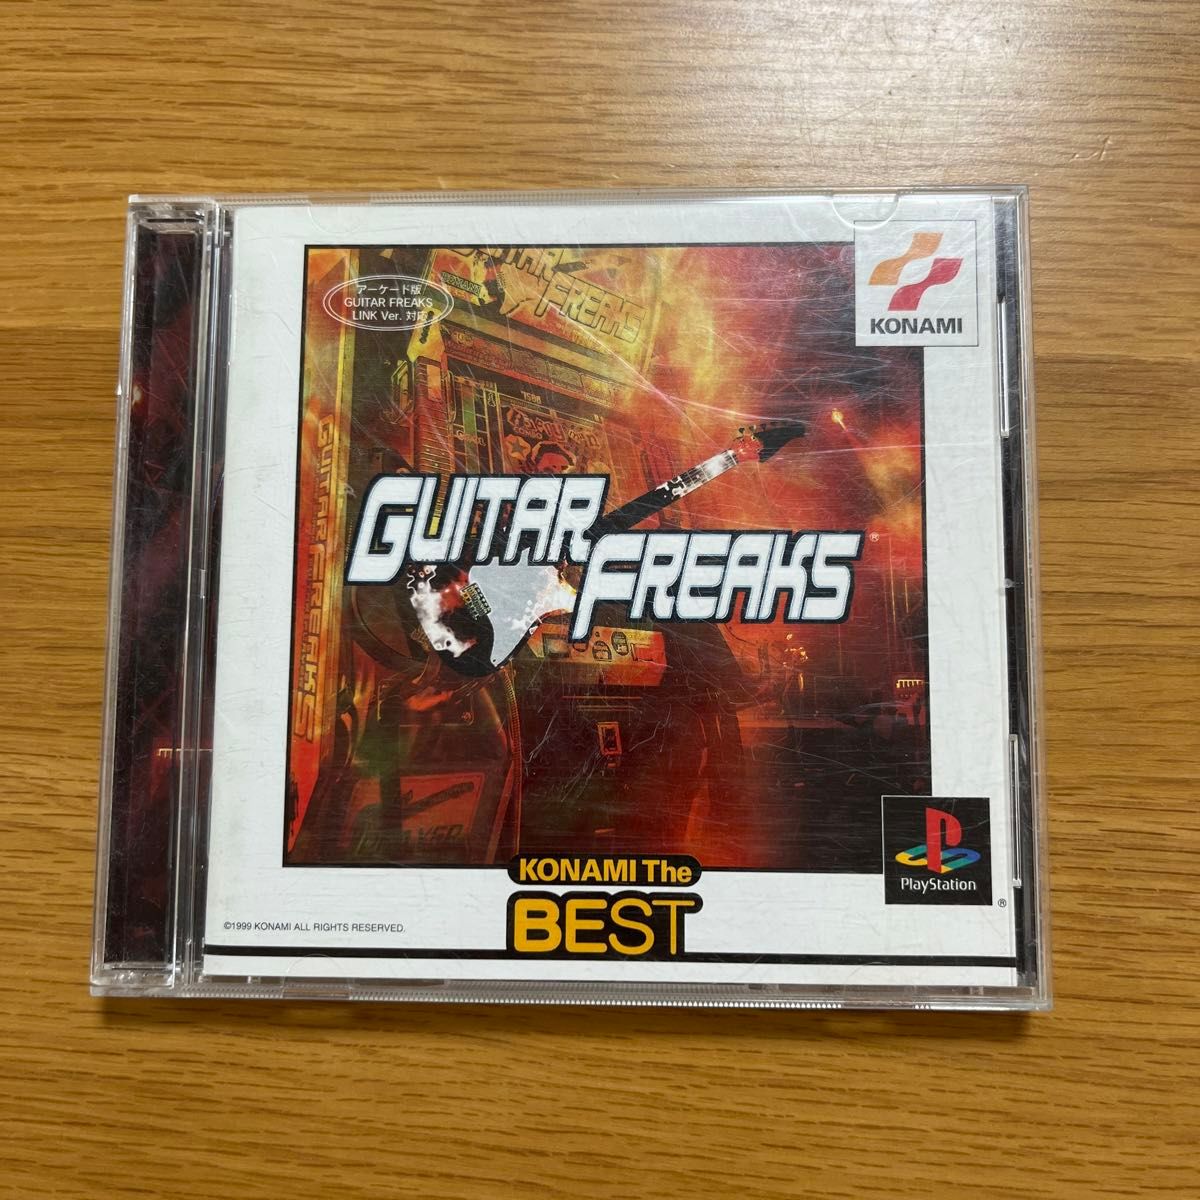 ギターフリークス GUTAR FREAKS PS1 プレイステーション PlayStation プレステ